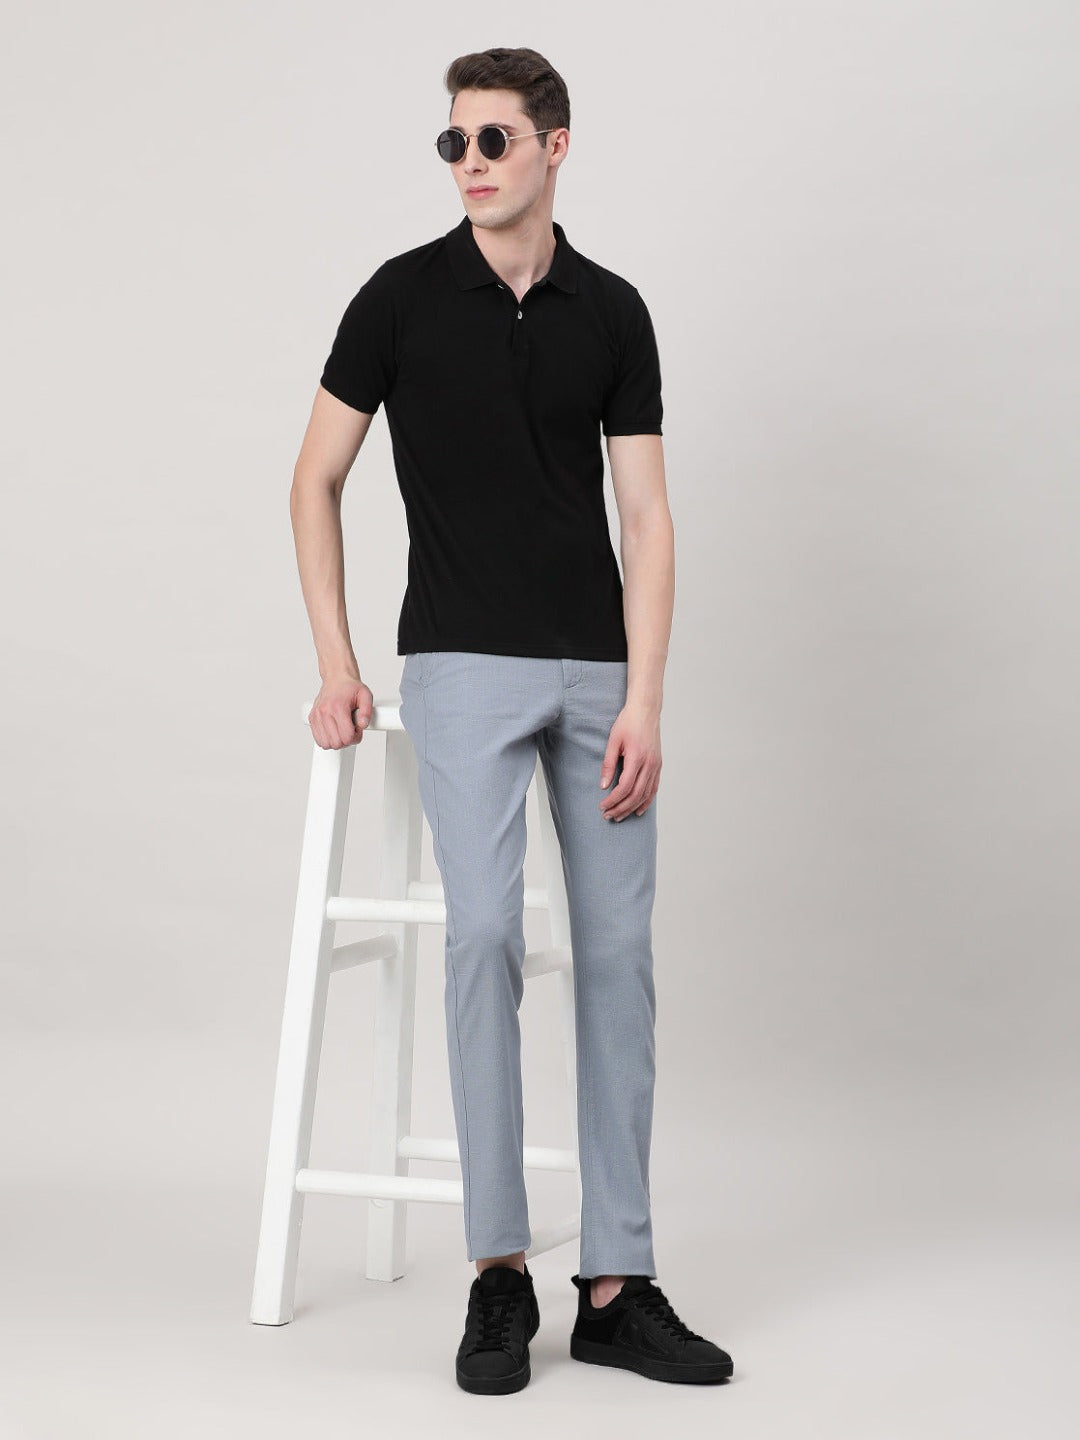 Buy vandnam fabrics Men's Slim Fit Formal Trousers  (pantaloonblack.28_Black_28) at Amazon.in